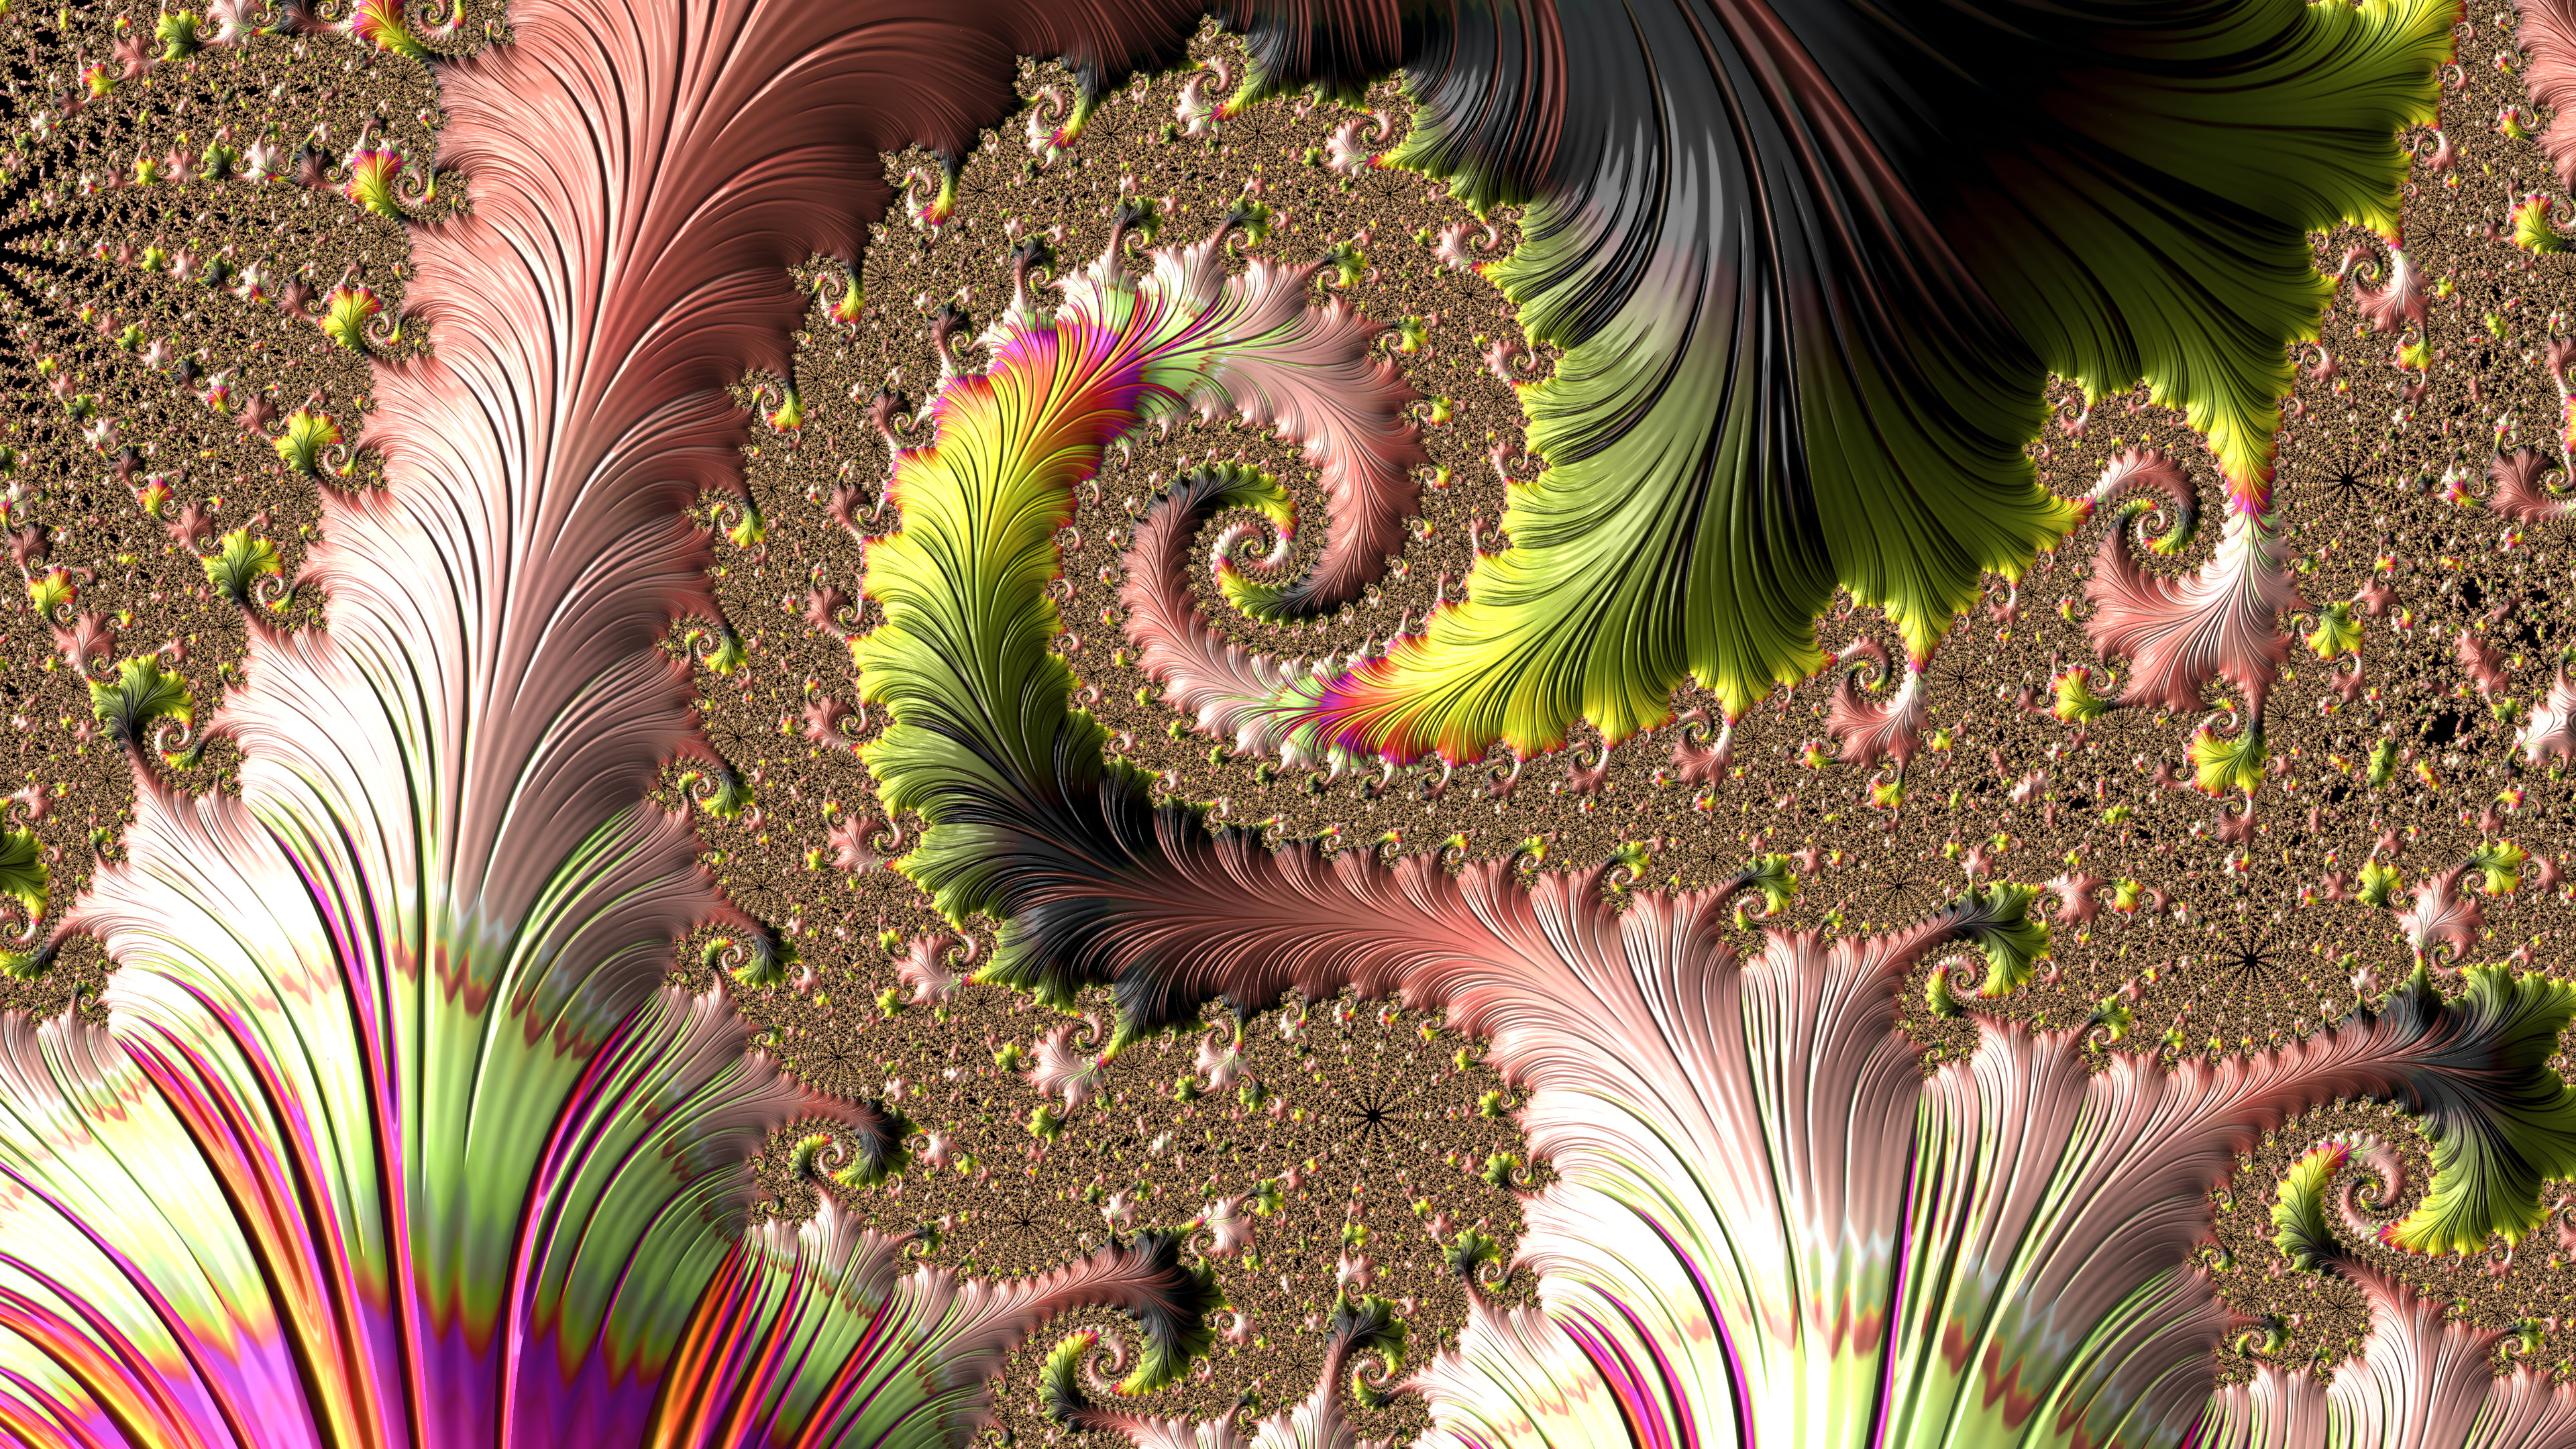 Fractal Art for your Desktop - Colorful Spirals by Dr-Pen on